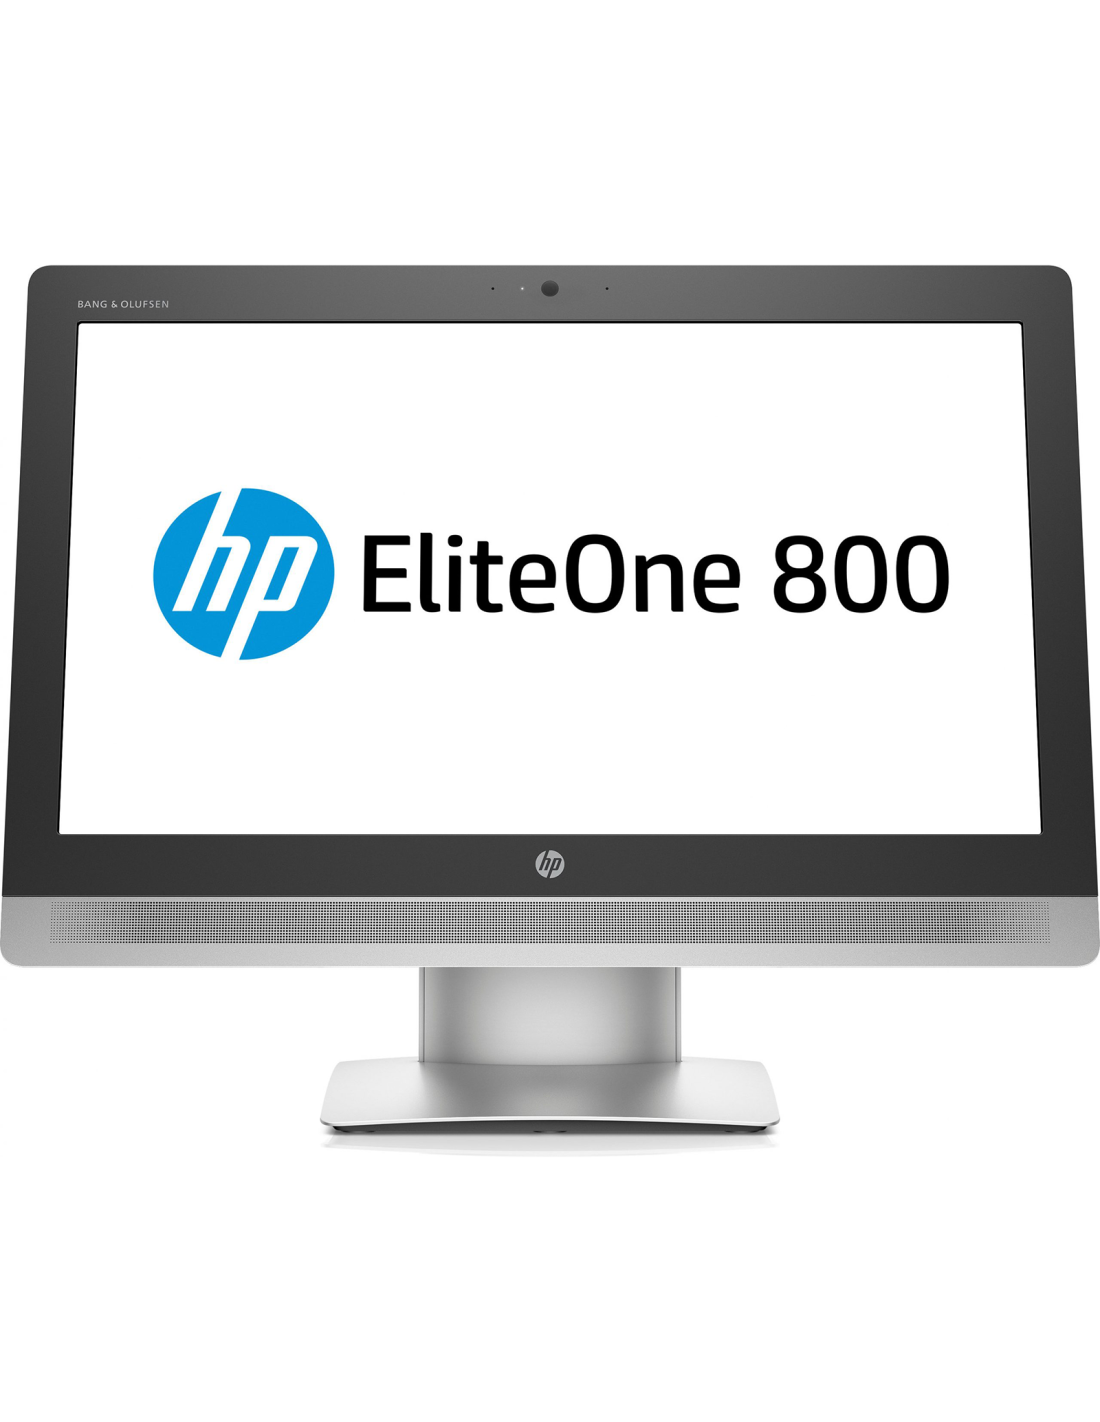 PC Computer All-In-One Ricondizionato HP EliteOne 800 G2 23" Intel i5-6400 Ram 8GB SSD 240GB Webcam Grado B